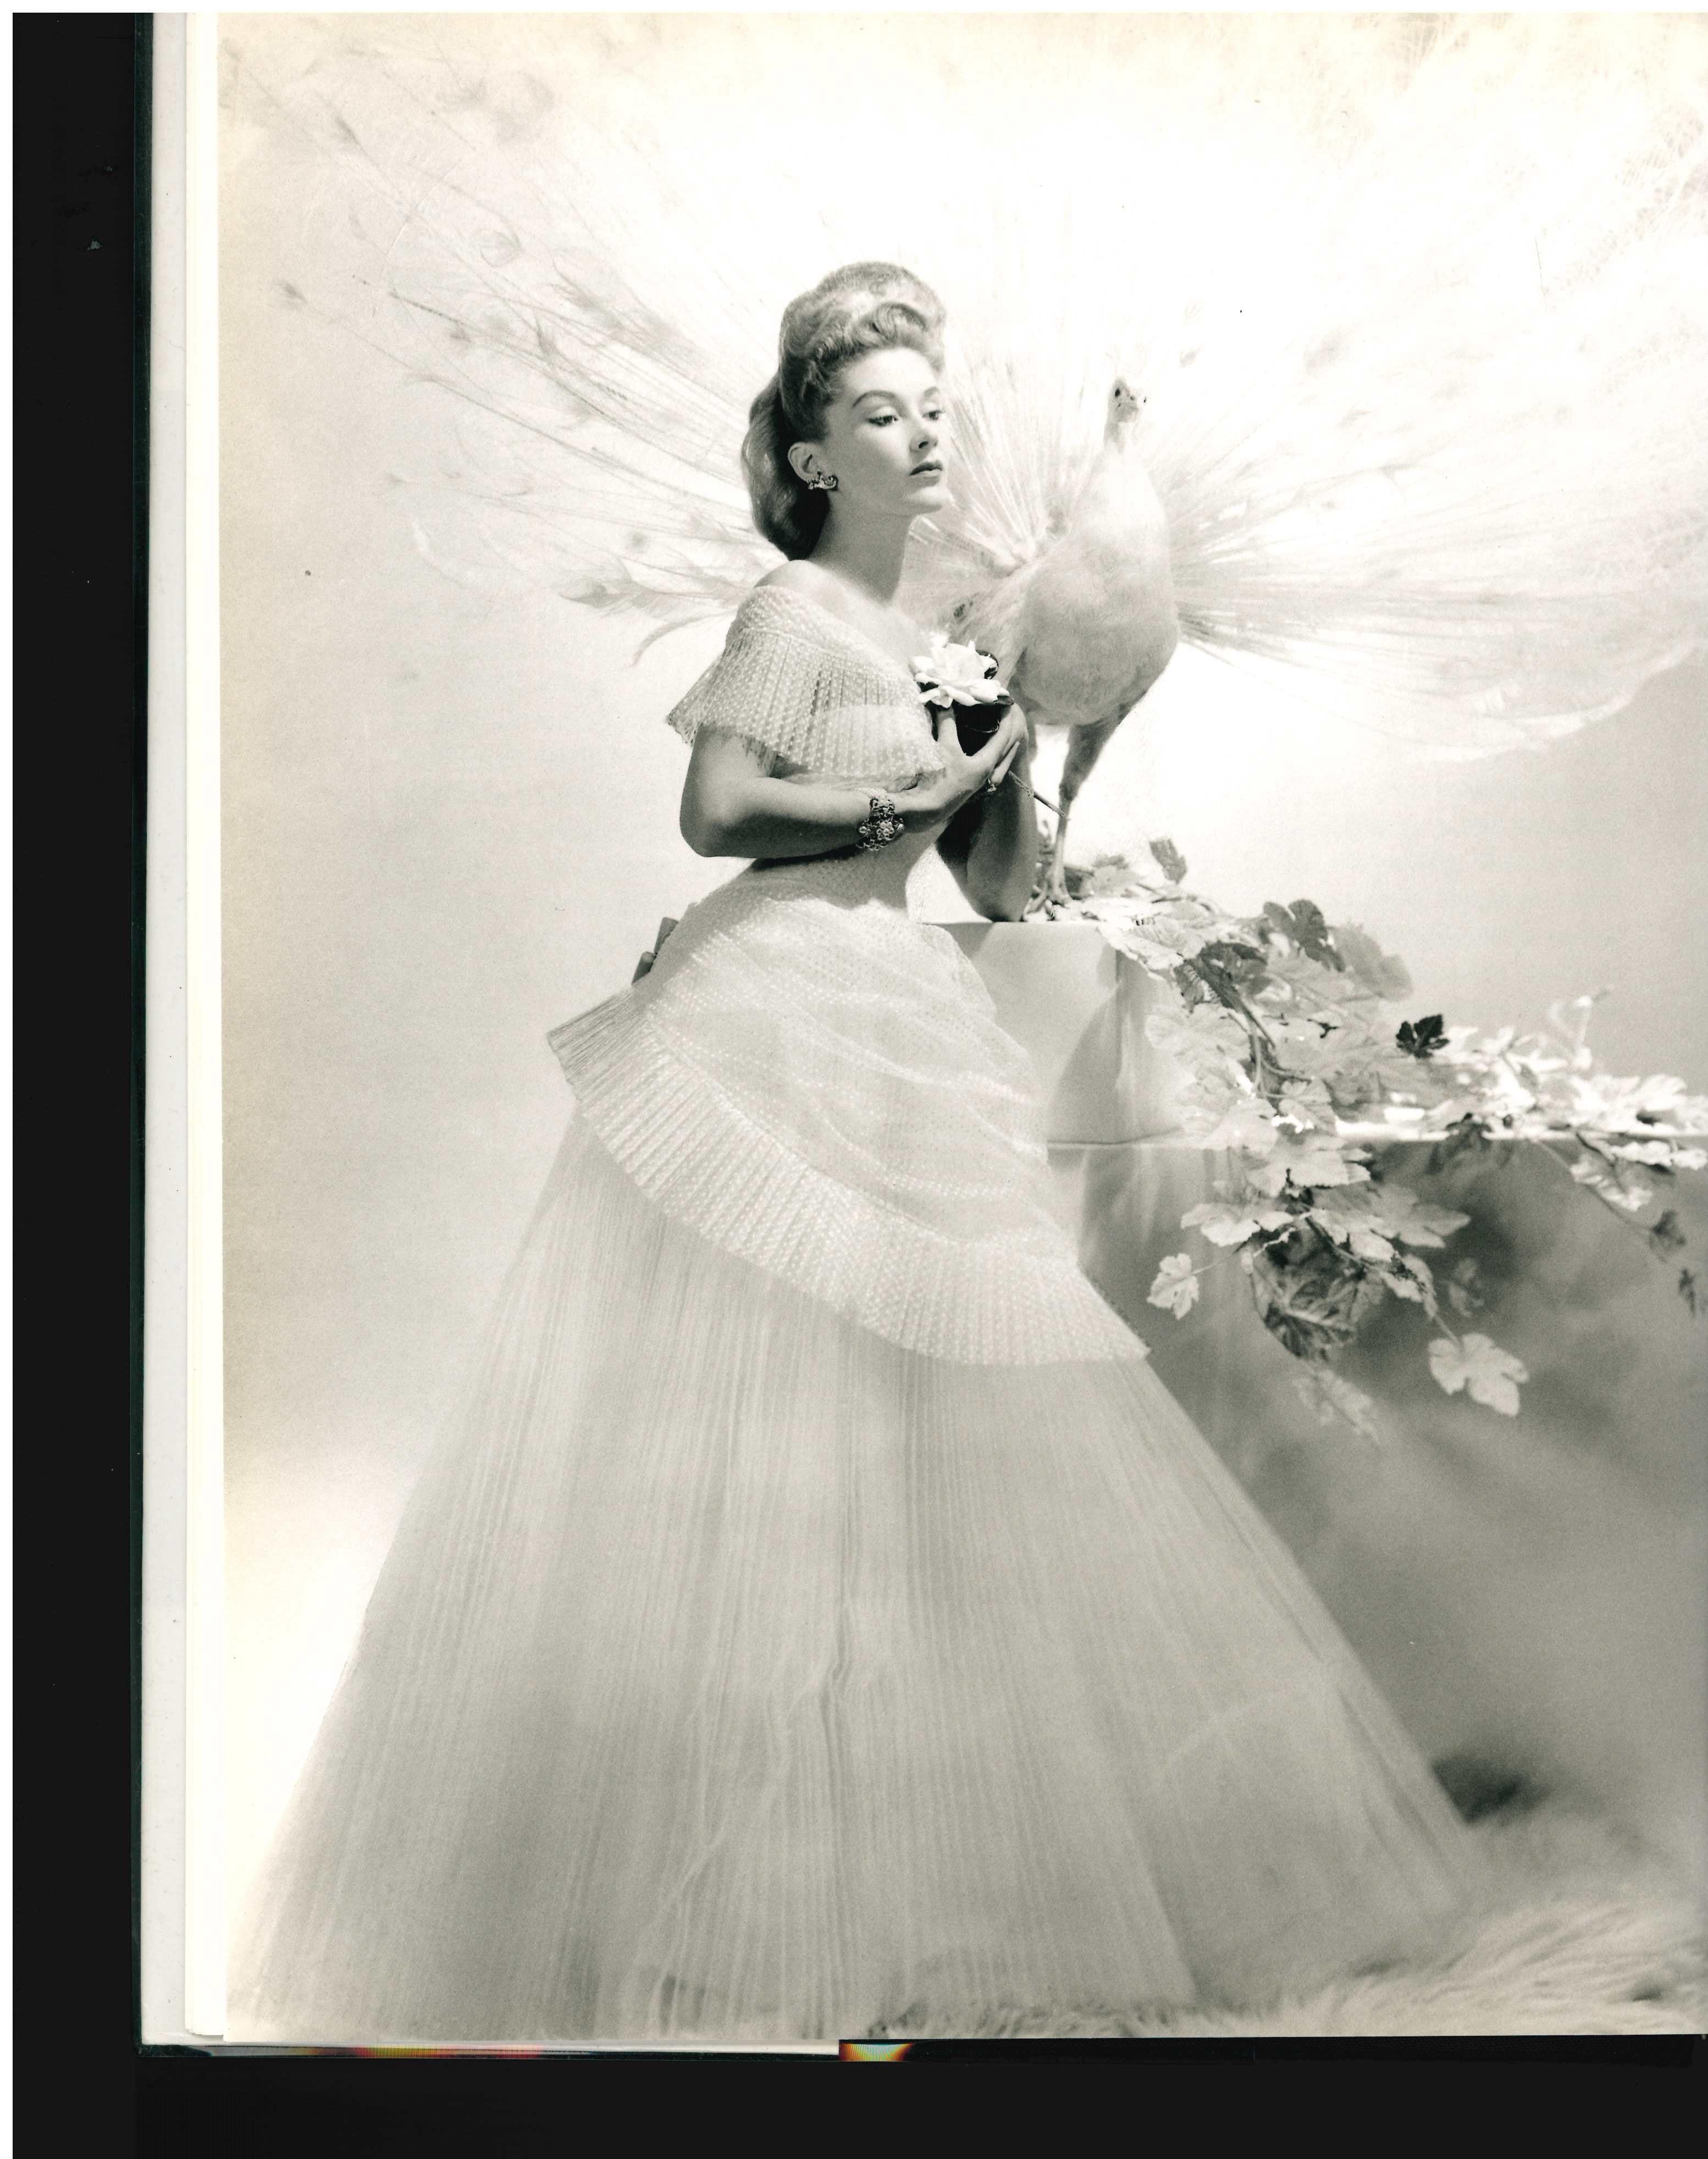 Von David Seidner & Martin Harrison

Jahrhunderts und Muse für einige der einflussreichsten Fotografen - darunter Horst, Man Ray, Richard Avedon und ihr Ehemann Irving Penn - war Lisa Fonssagrives eine der größten Modemodelle des 20. Sie war auf